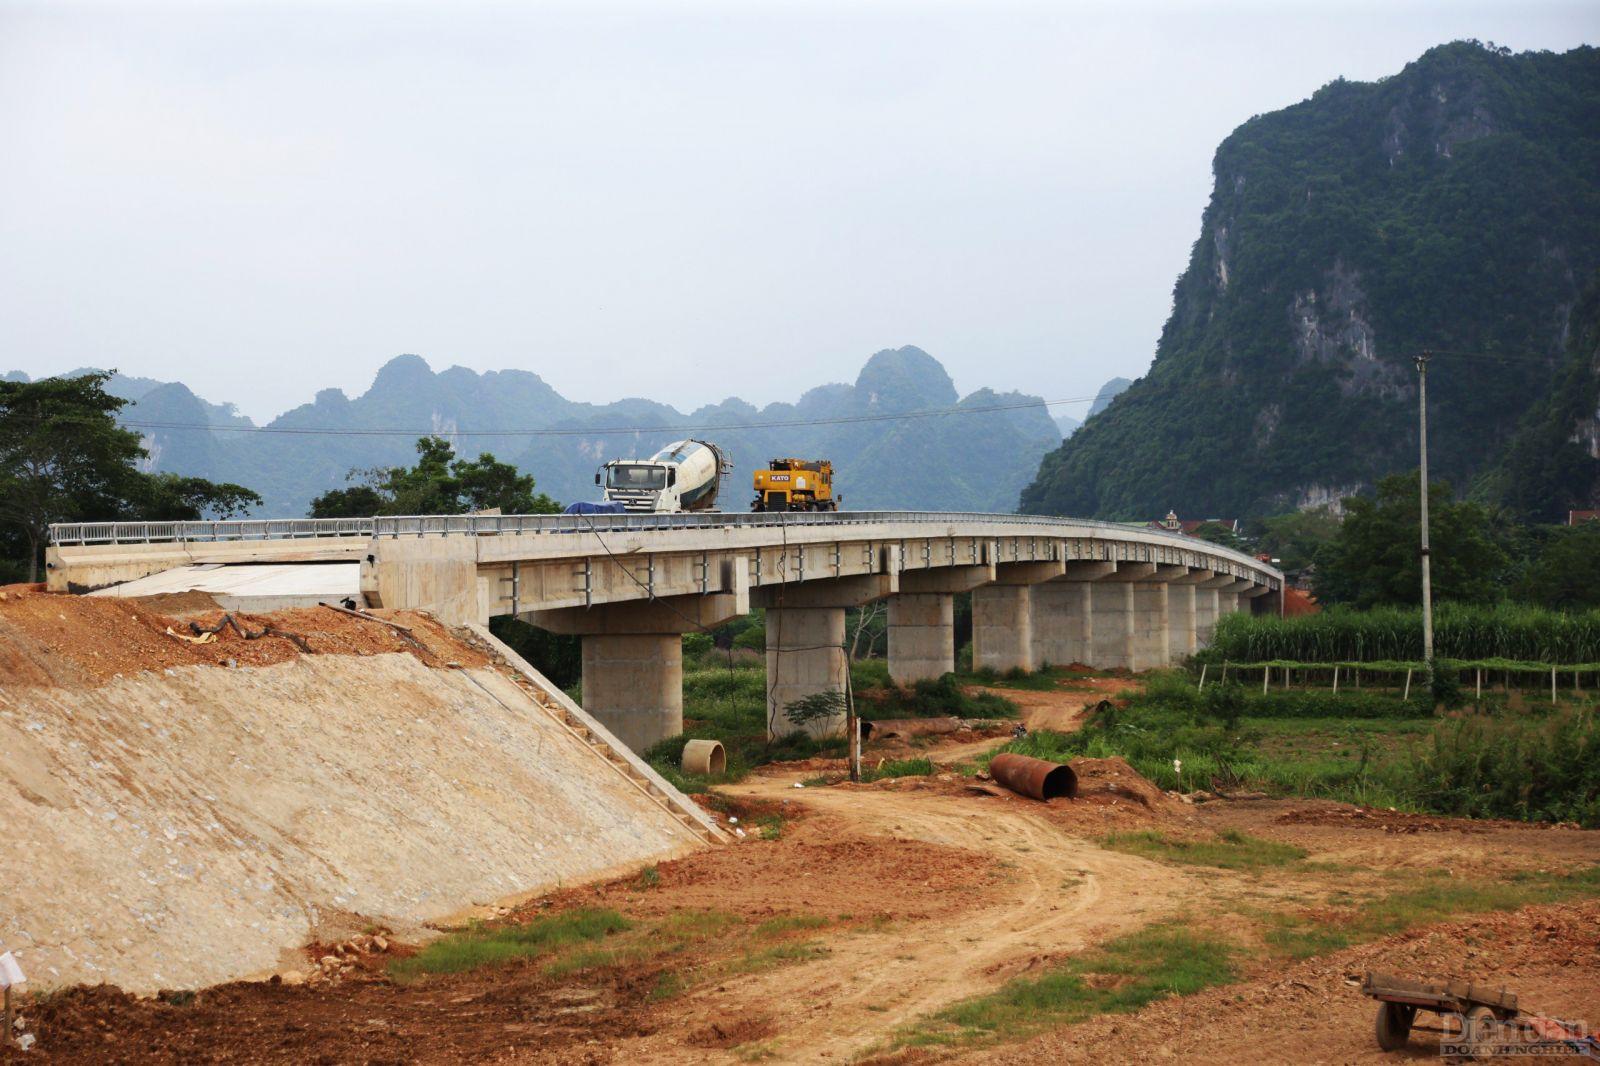 Dự án xây dựng cầu Thanh Nam qua sông Lam ở huyện Con Cuông, tỉnh Nghệ An đã thi công cơ bản xong hạng mục cầu nhưng lại đang gặp vướng mắc ở phần đường dẫn khiến nhà thầu chưa thể triển khai thực hiện